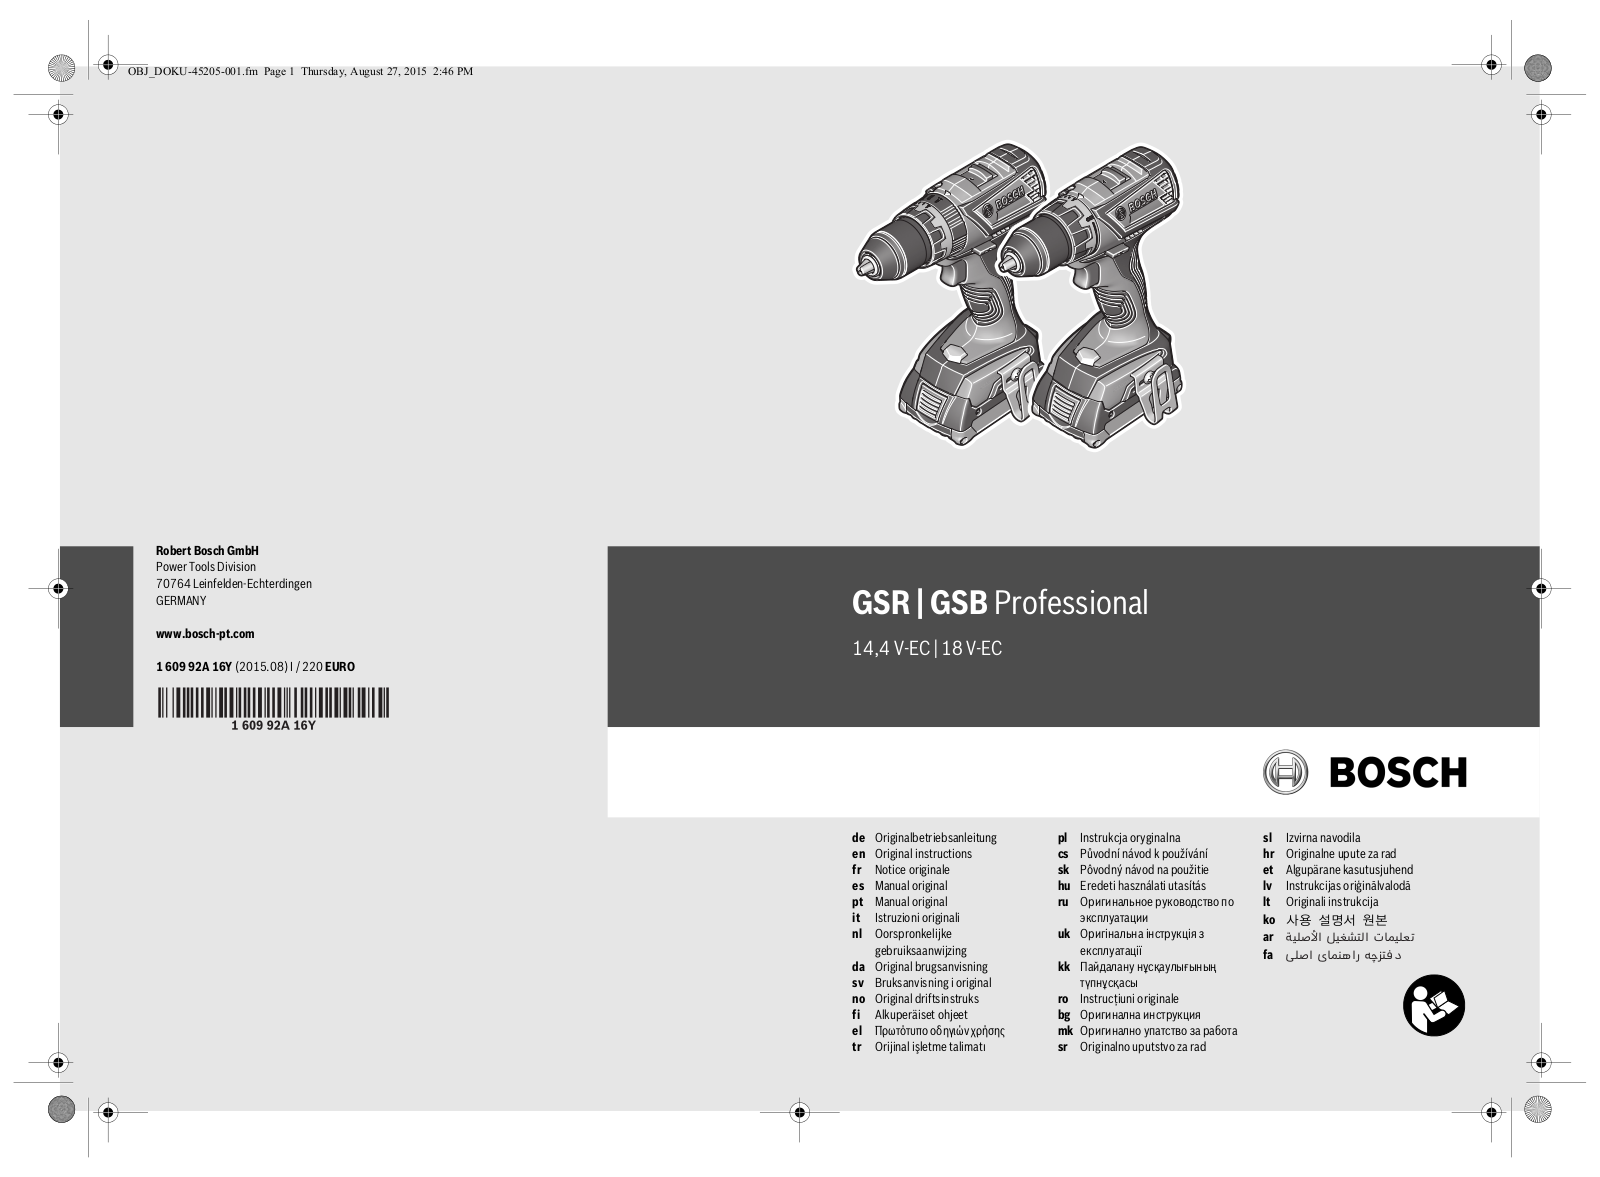 Bosch GSR Professional 14.4 V-EC, GSB Professional 18 V-EC Original Instructions Manual